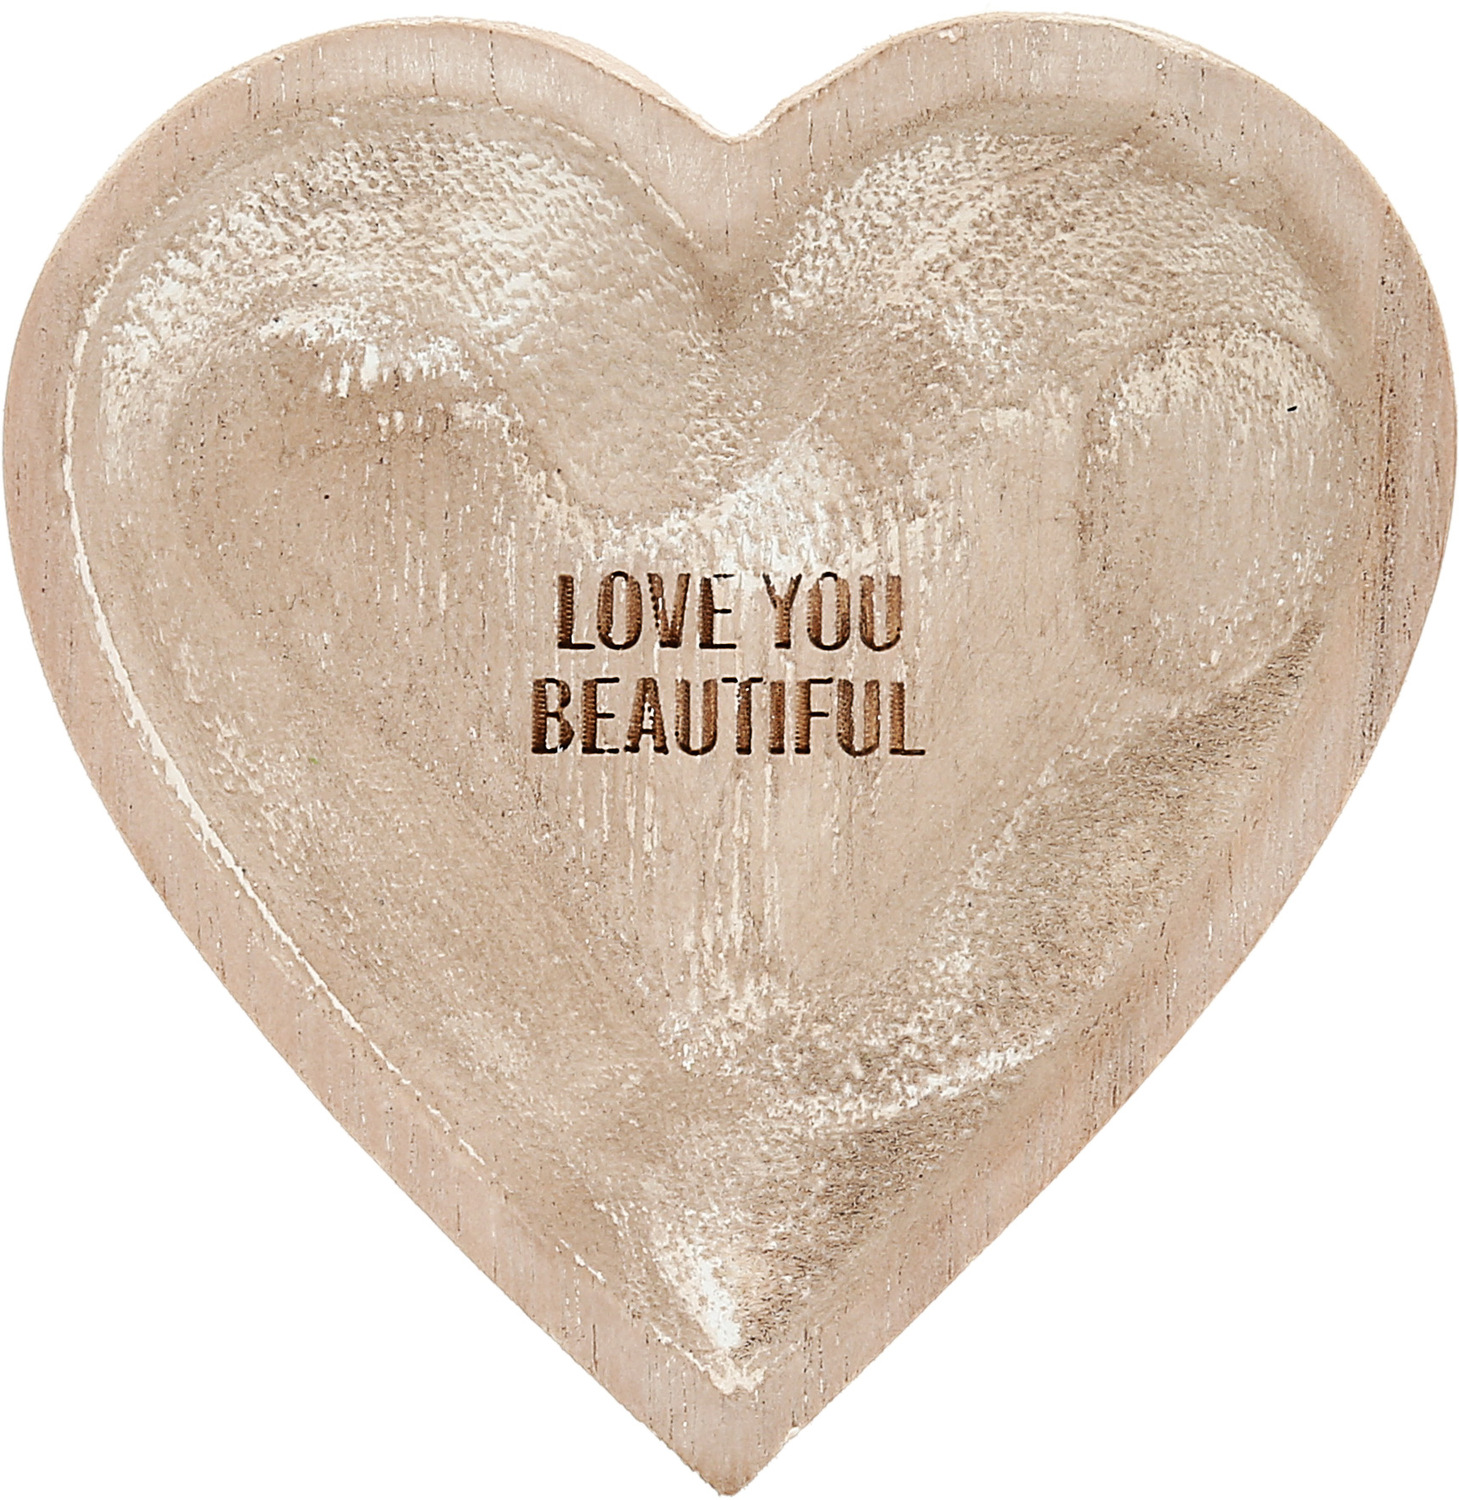 Love You Beautiful by Love You - Love You Beautiful - 4" Wood Keepsake Dish